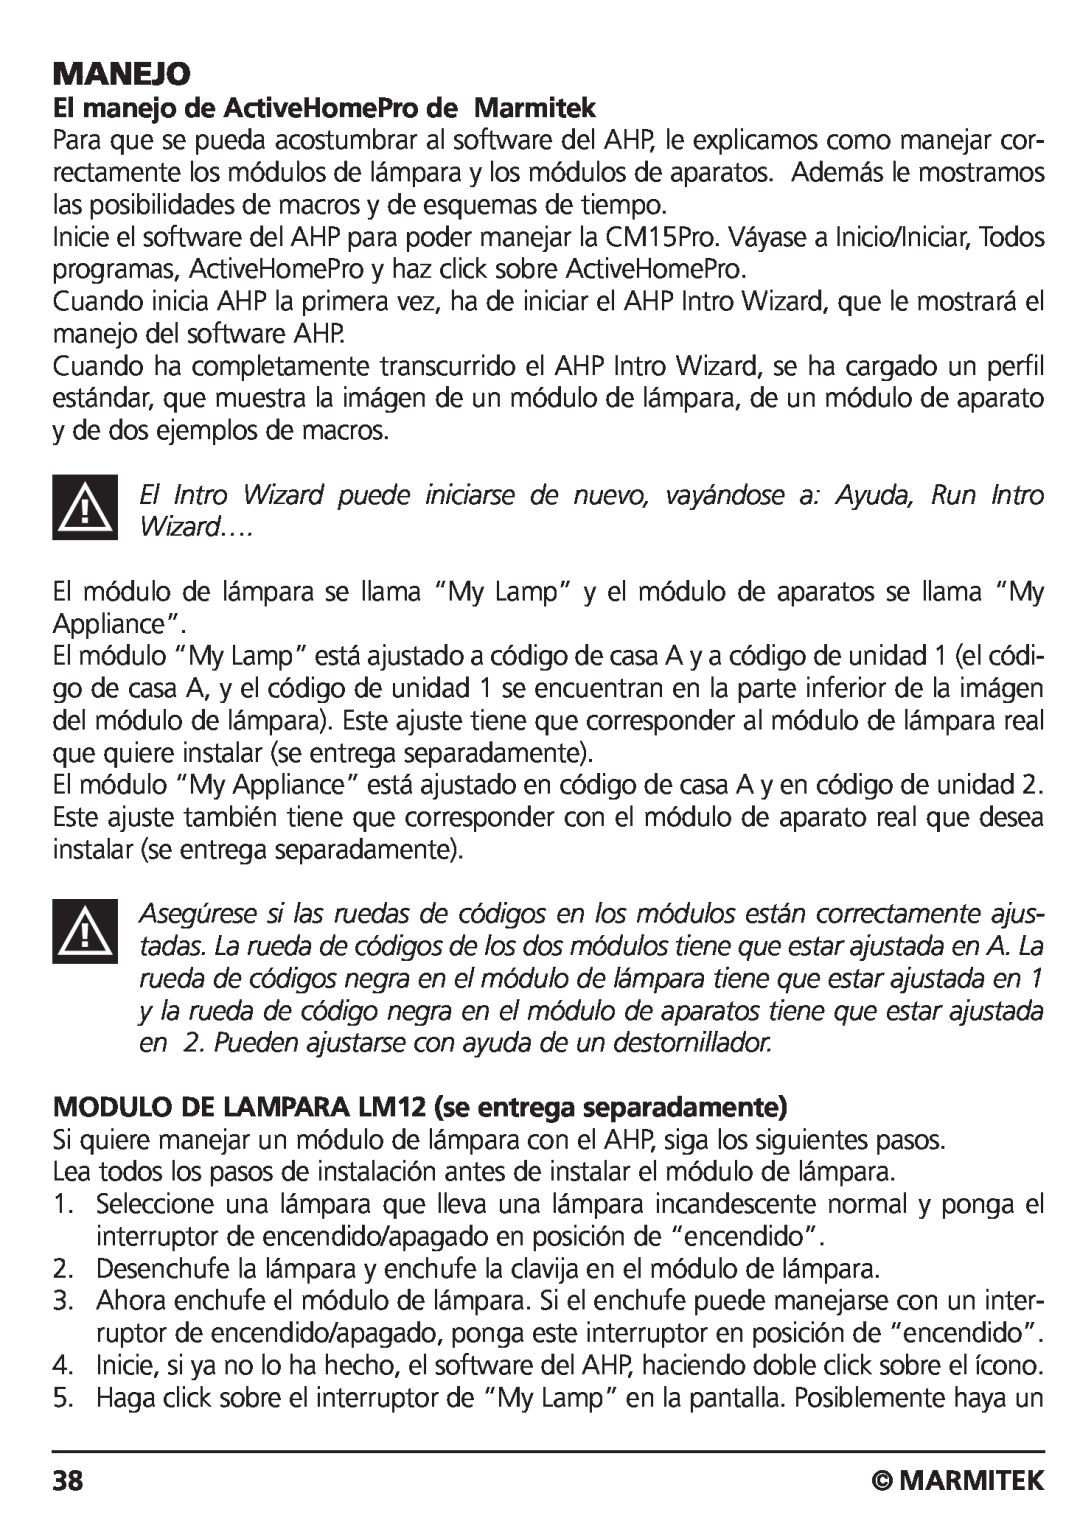 Marmitek CM15PRO manual Manejo, El manejo de ActiveHomePro de Marmitek, MODULO DE LAMPARA LM12 se entrega separadamente 